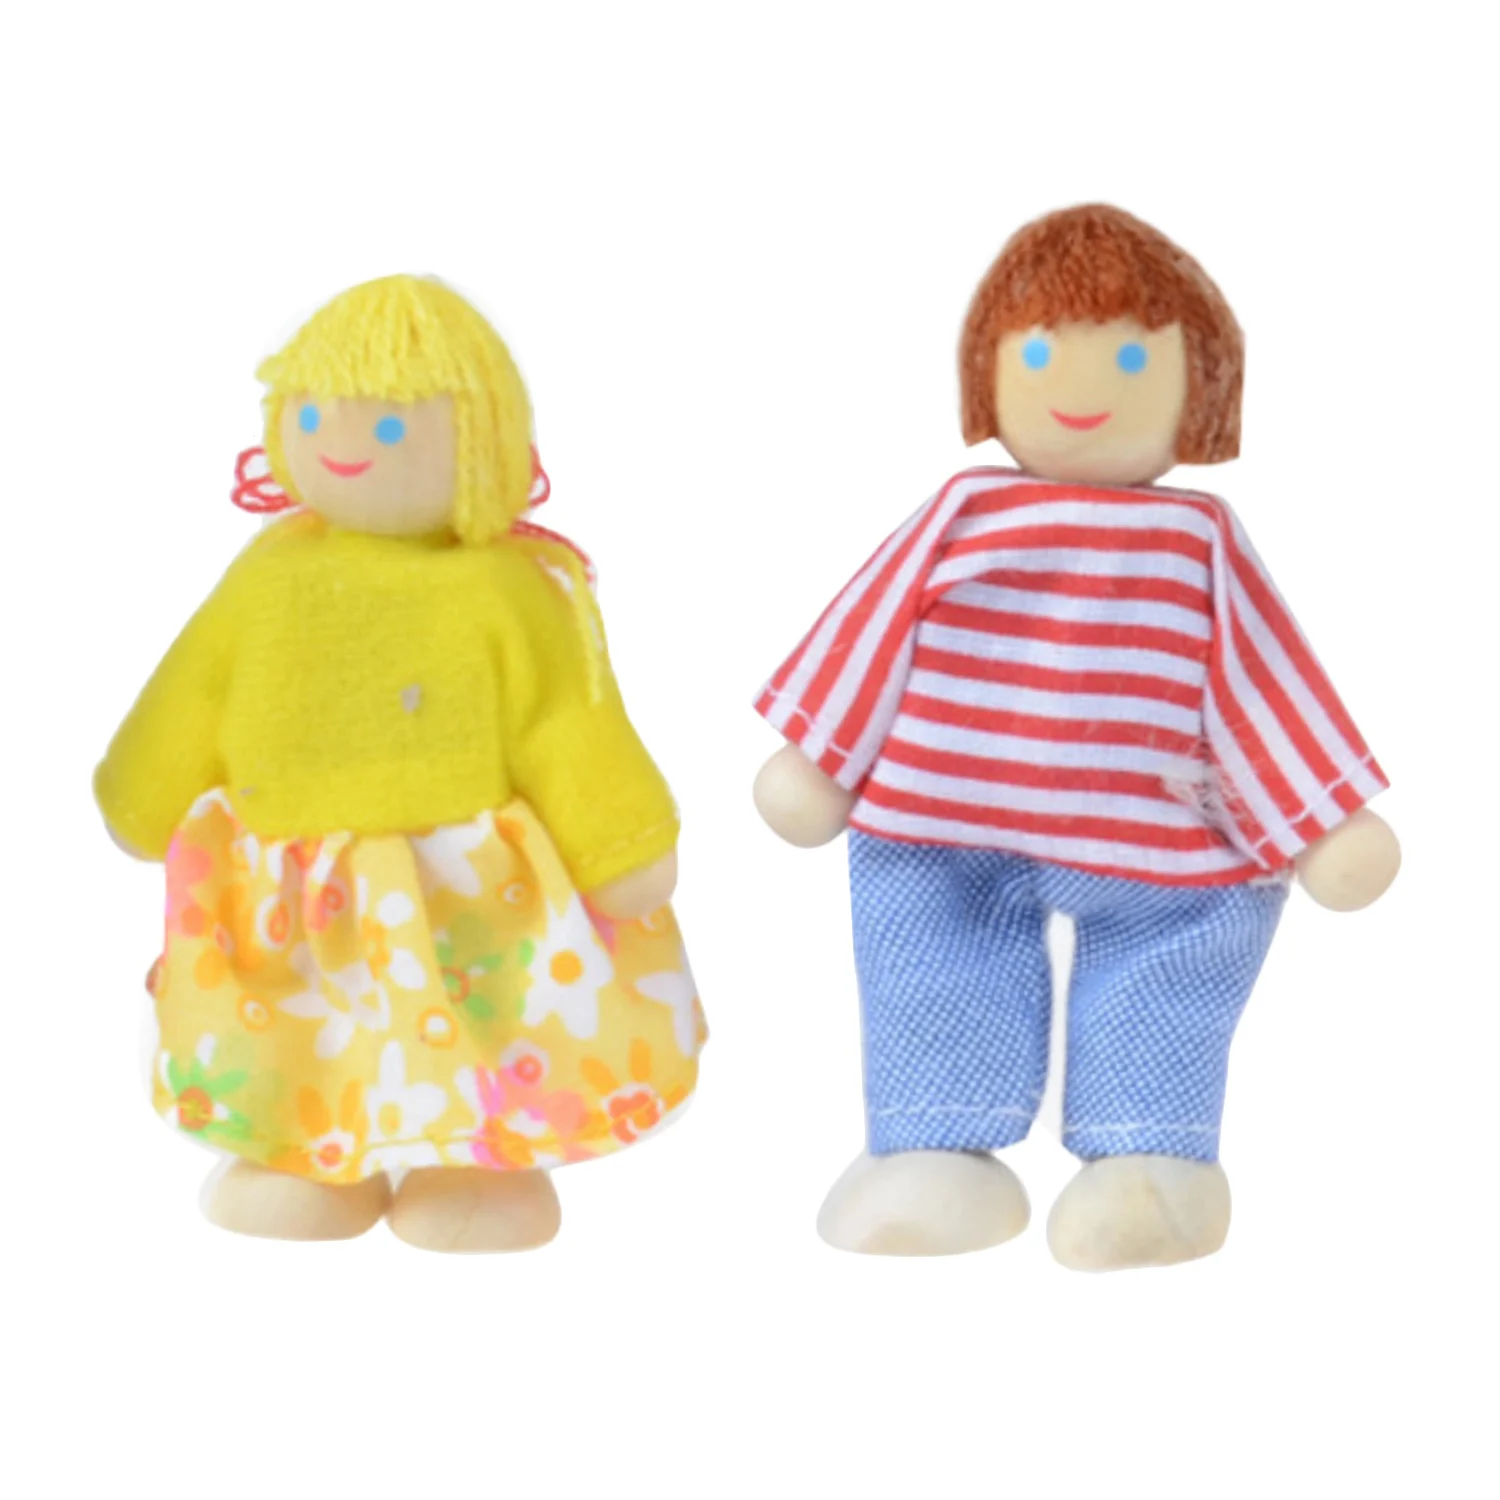 Besegad 7 шт. моделирование деревянные куклы семья игрушечные лошадки набор для детей детские игры Кукла подарок Дети ролевые игрушки